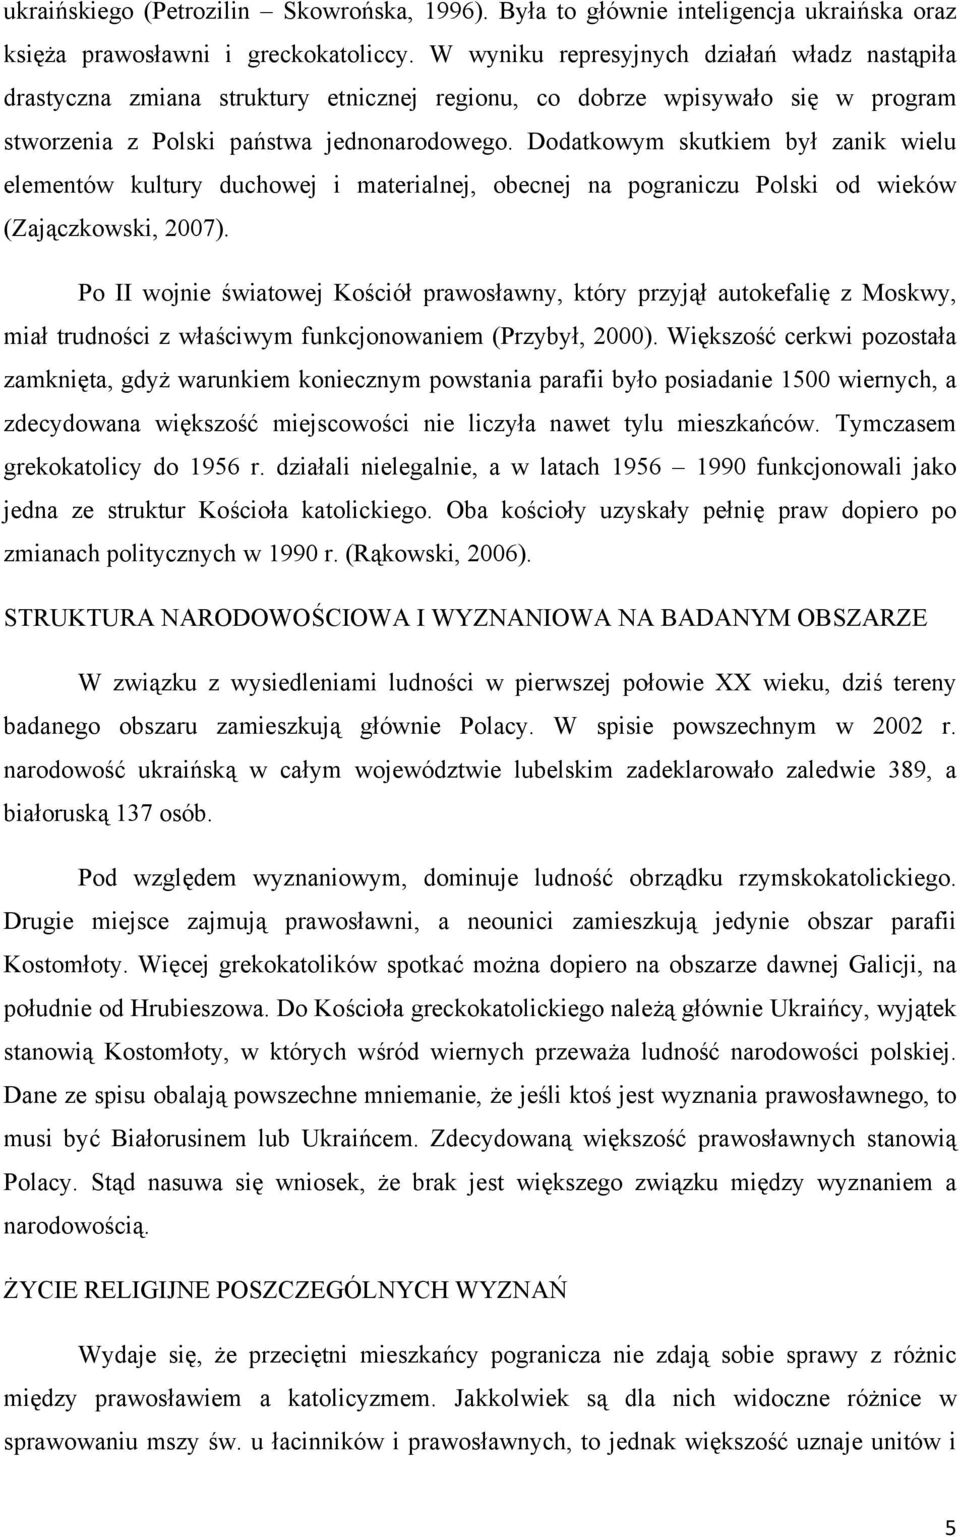 Dodatkowym skutkiem był zanik wielu elementów kultury duchowej i materialnej, obecnej na pograniczu Polski od wieków (Zajączkowski, 2007).